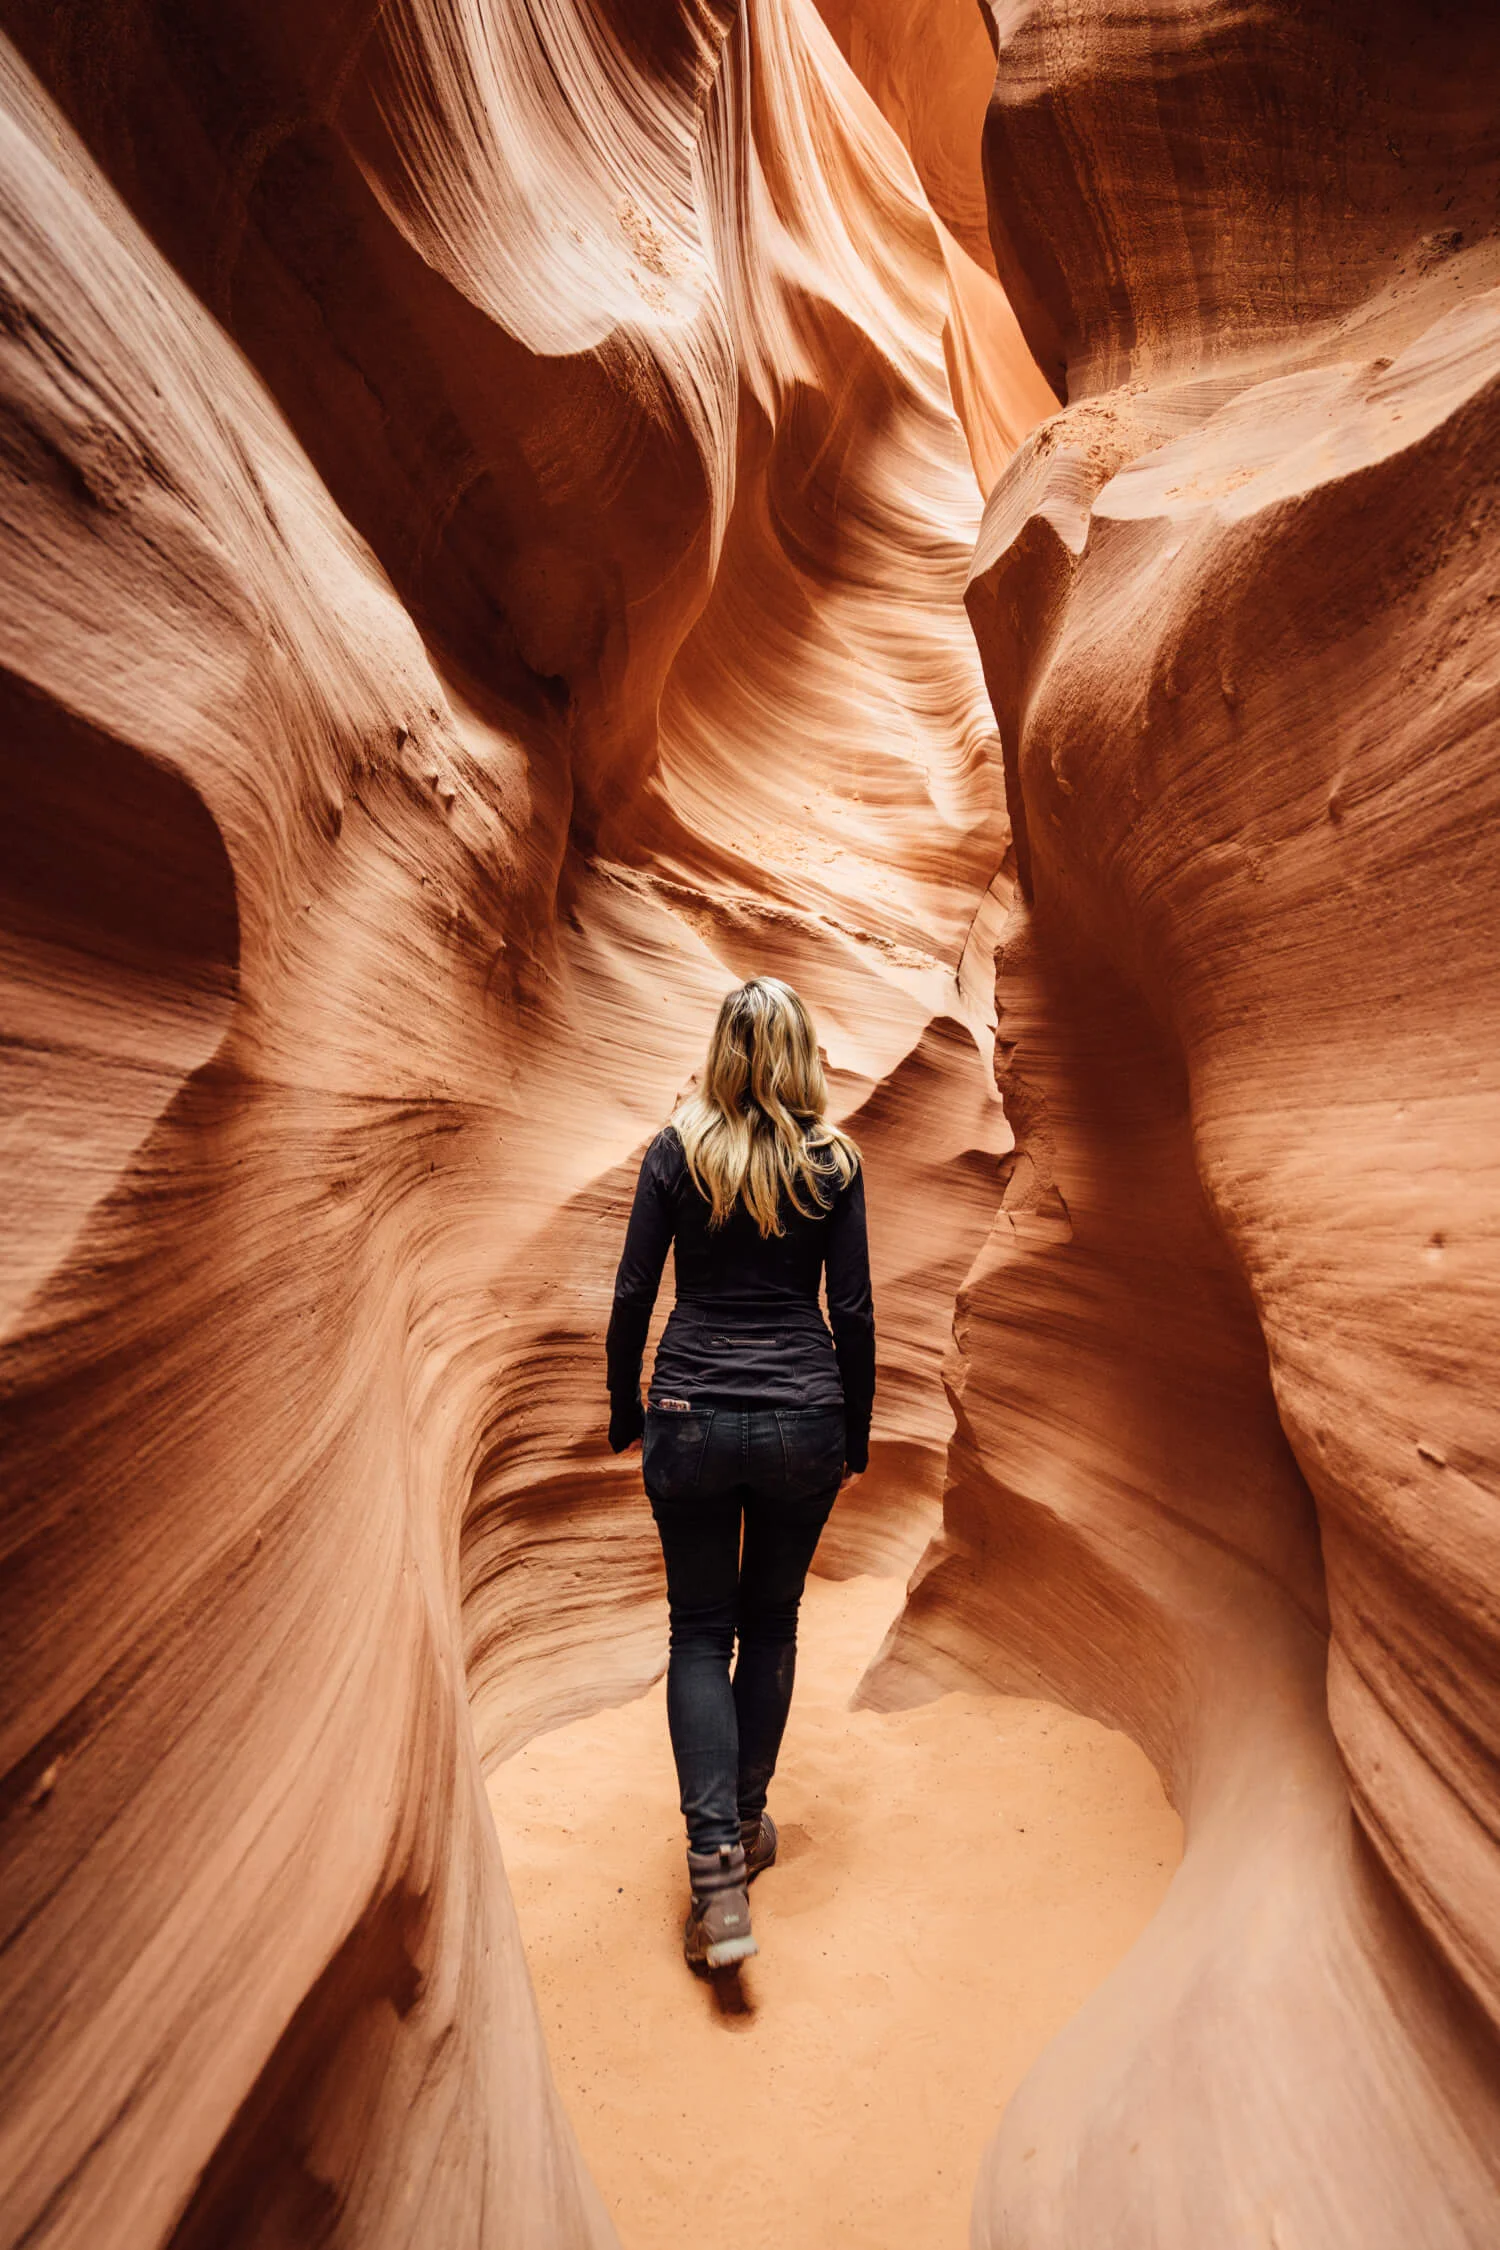 a person walking through a canyon